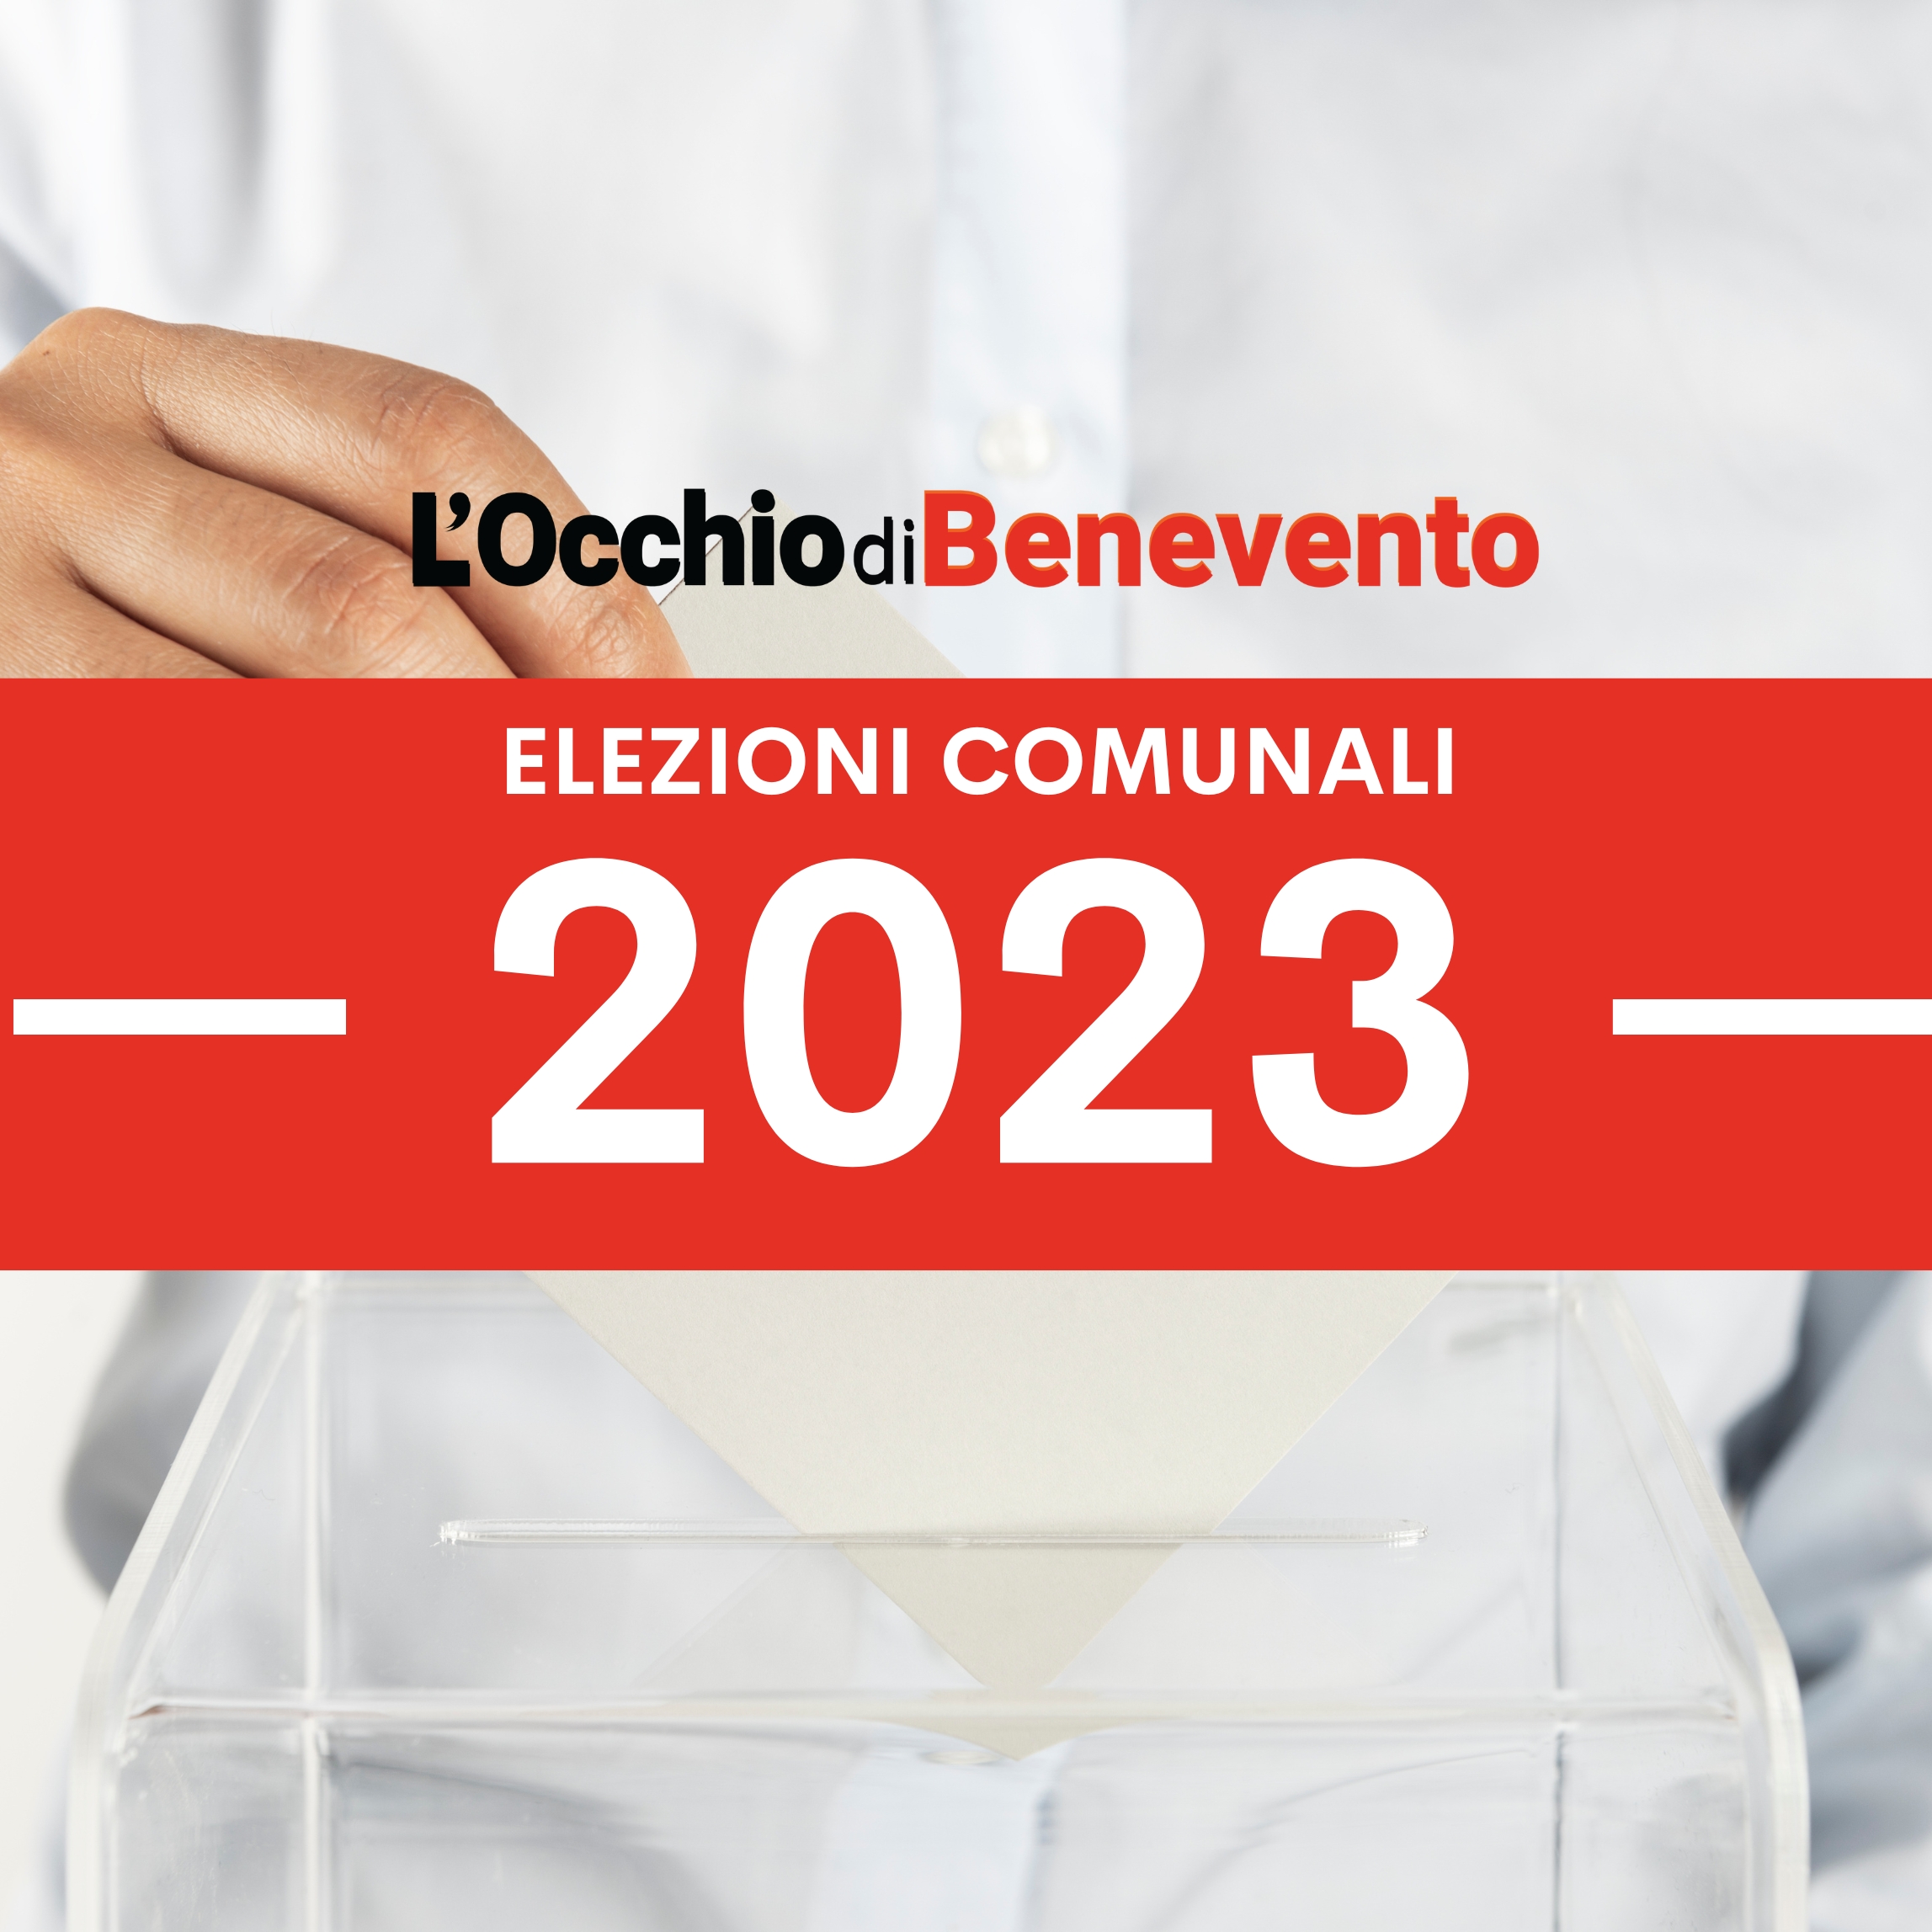 elezioni 2023 provincia Benevento liste candidati